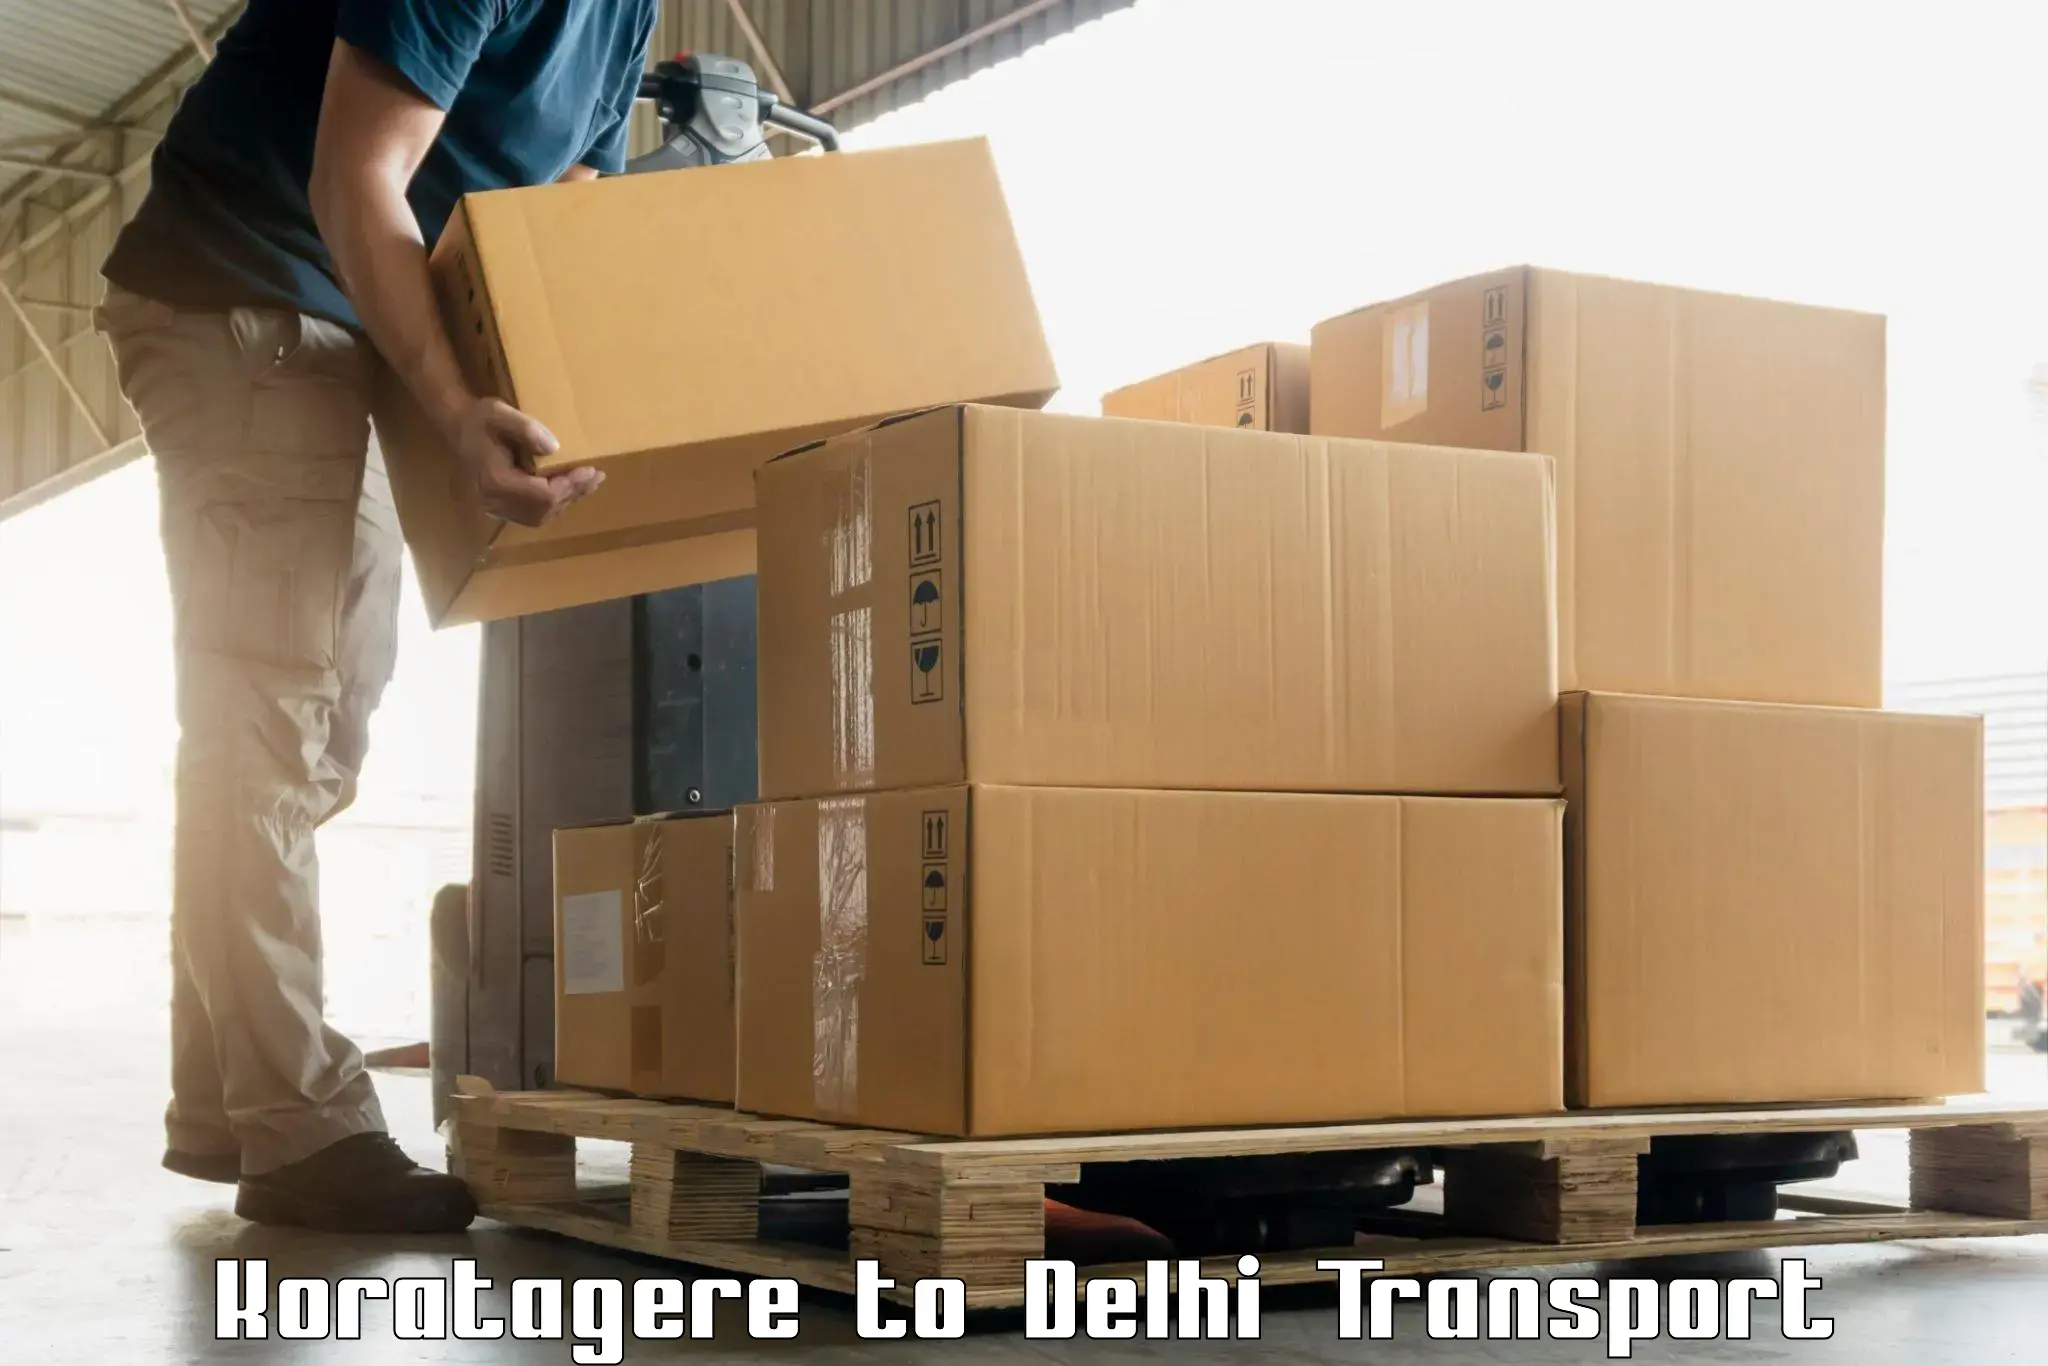 Online transport service Koratagere to Delhi